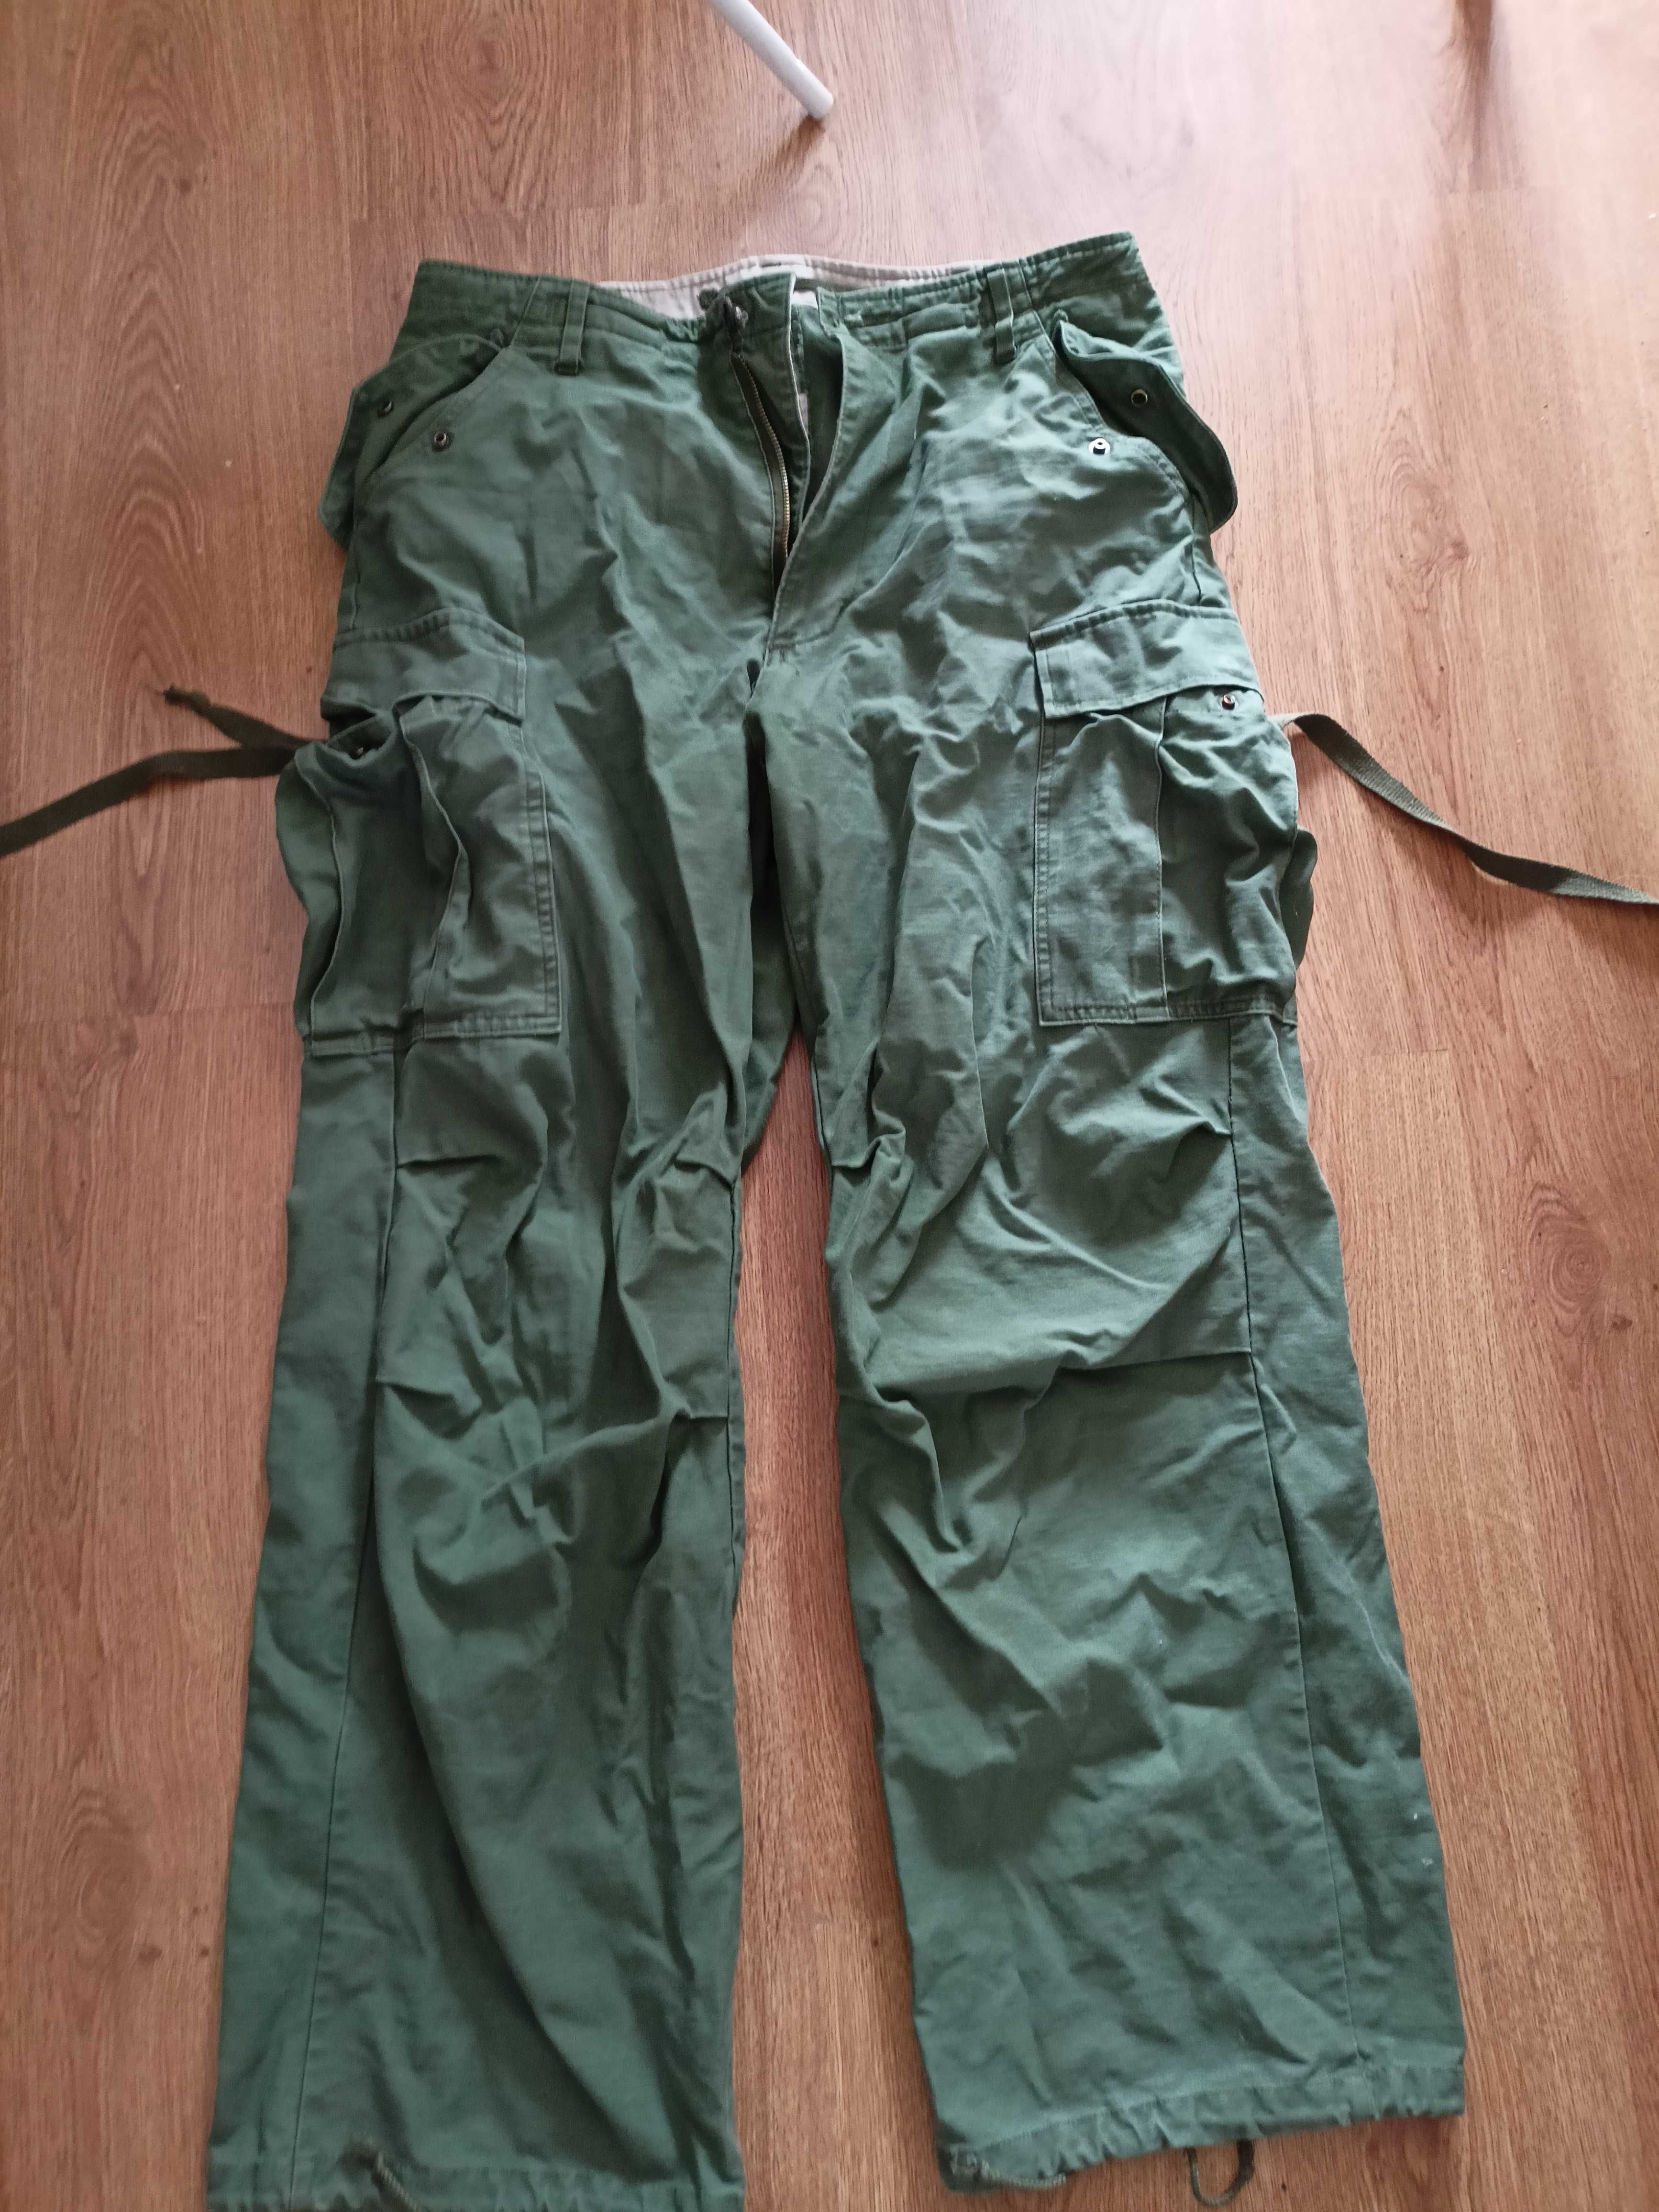 Spodnie M65 bojówki, używane, oliwkowe, mundurowe ZHR/ZHP